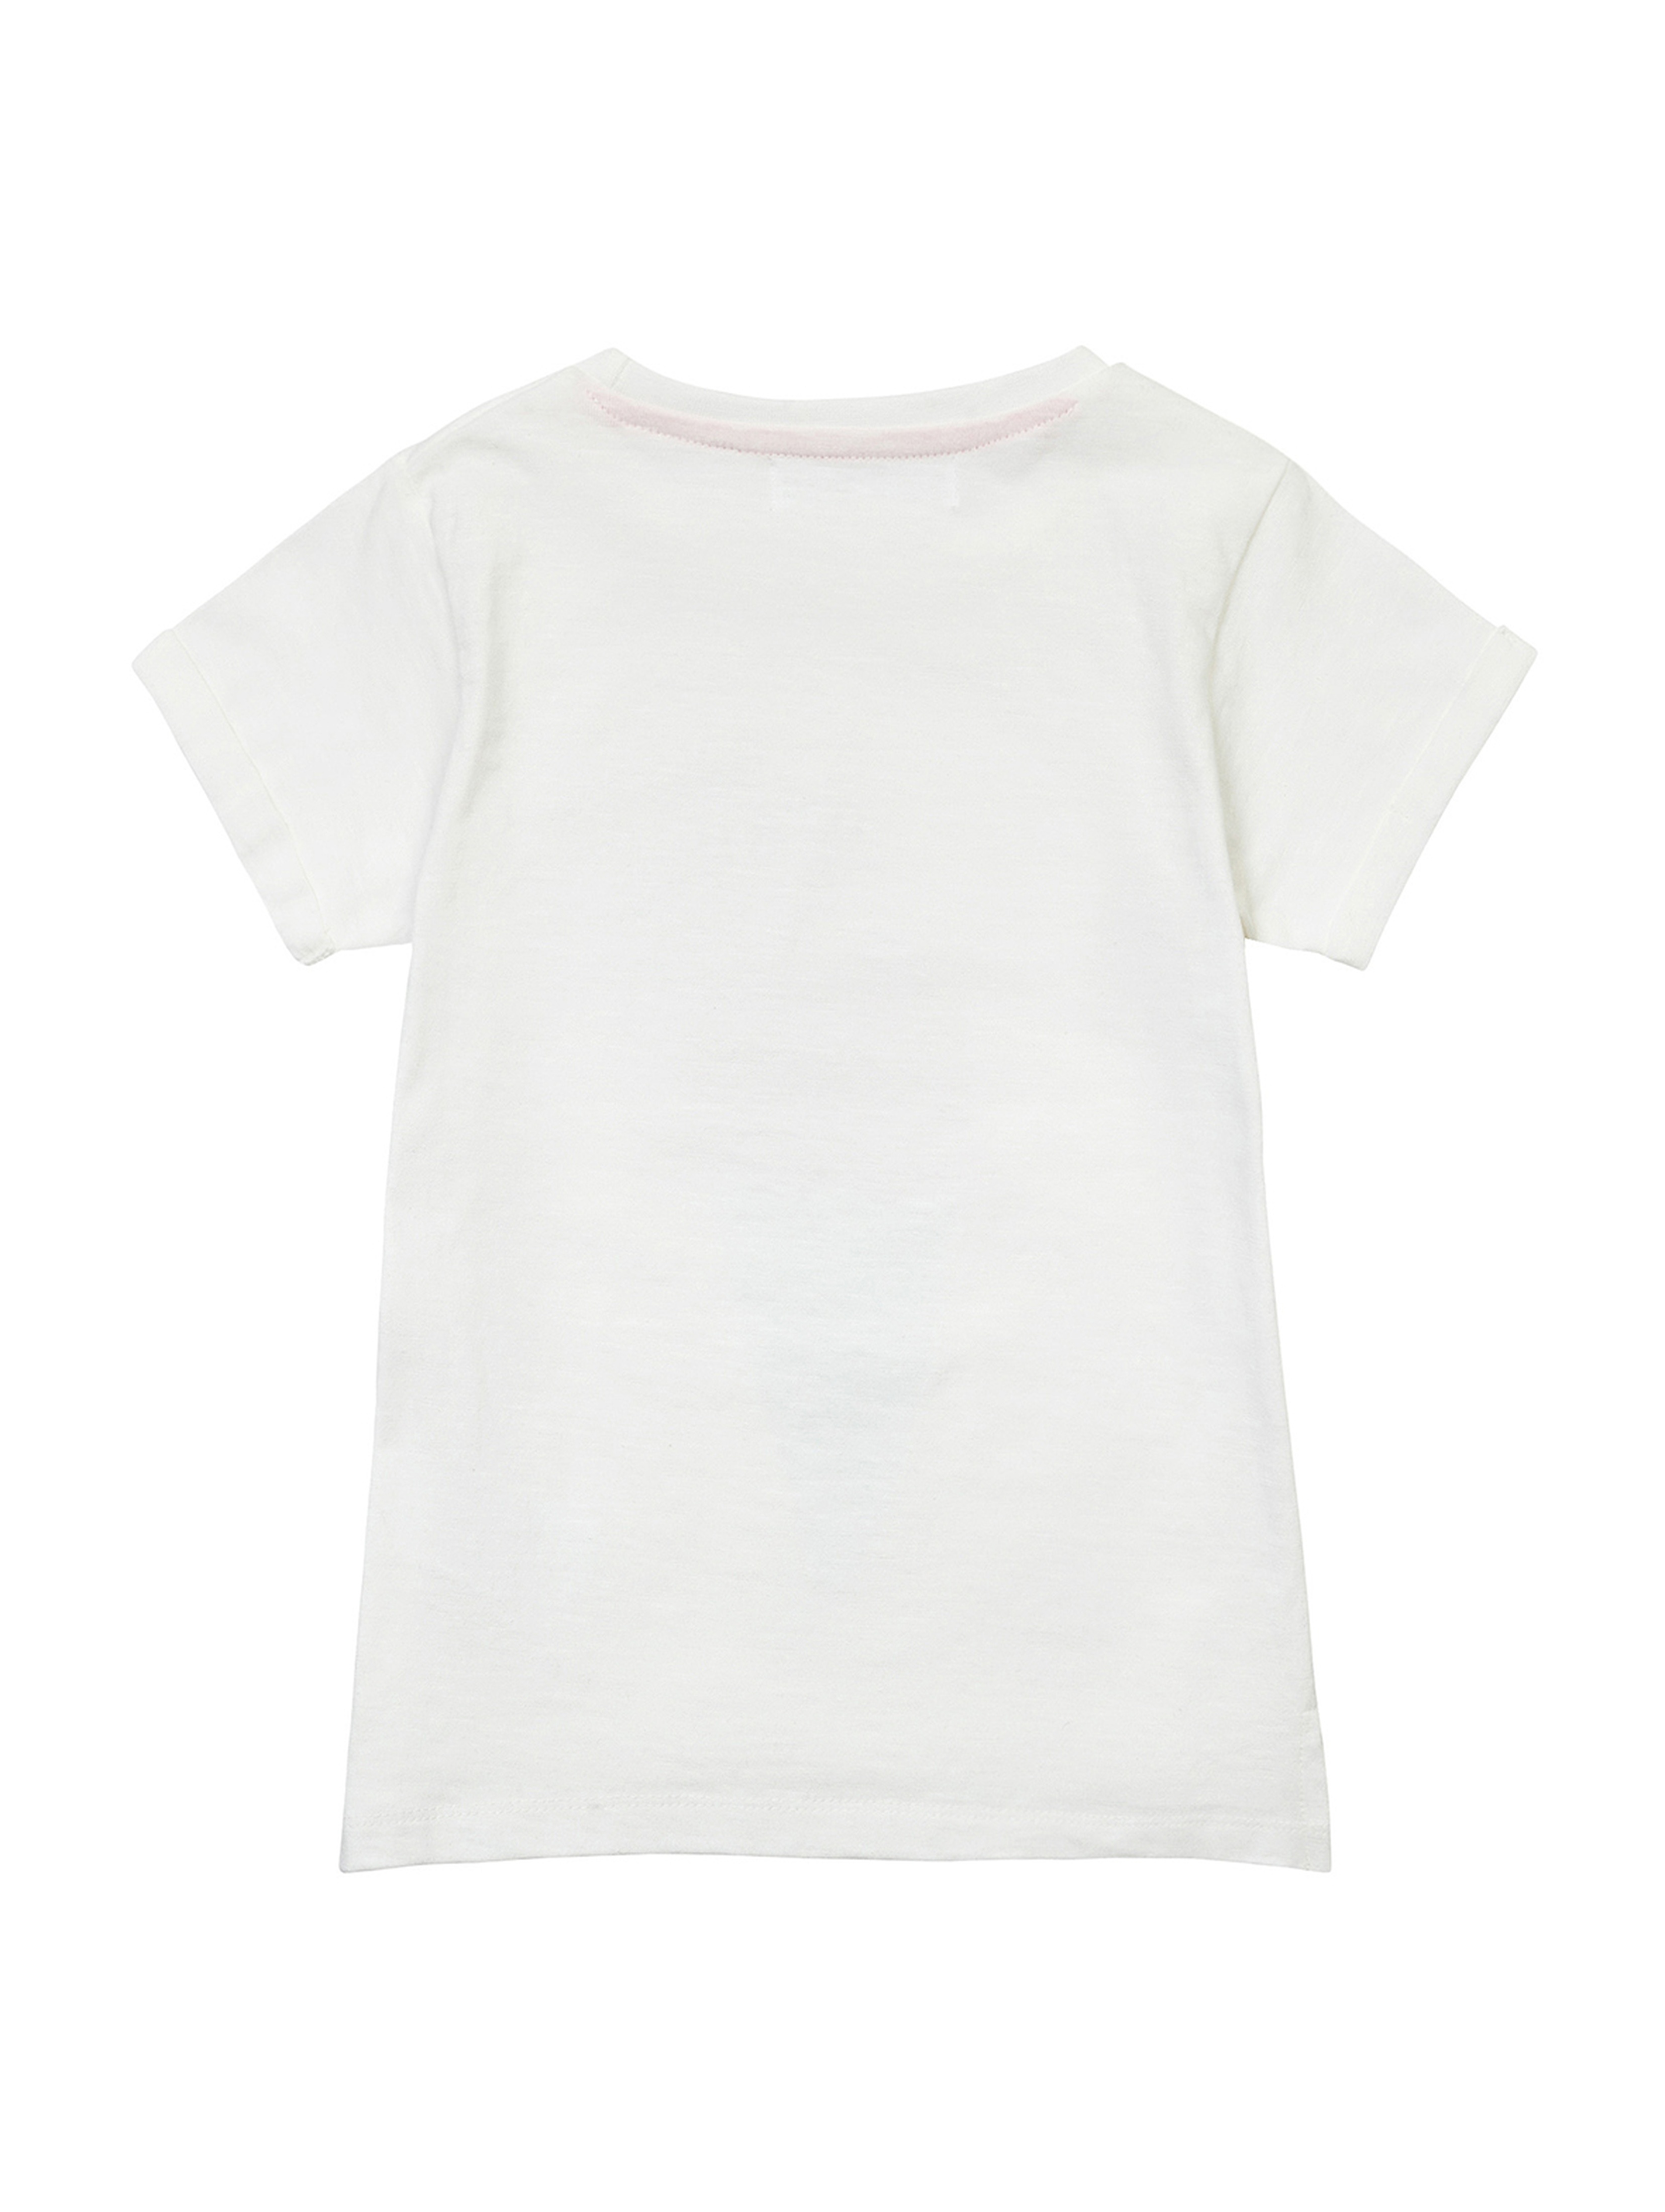 T-shirt biały z bawełny dla niemowlaka z nadrukiem